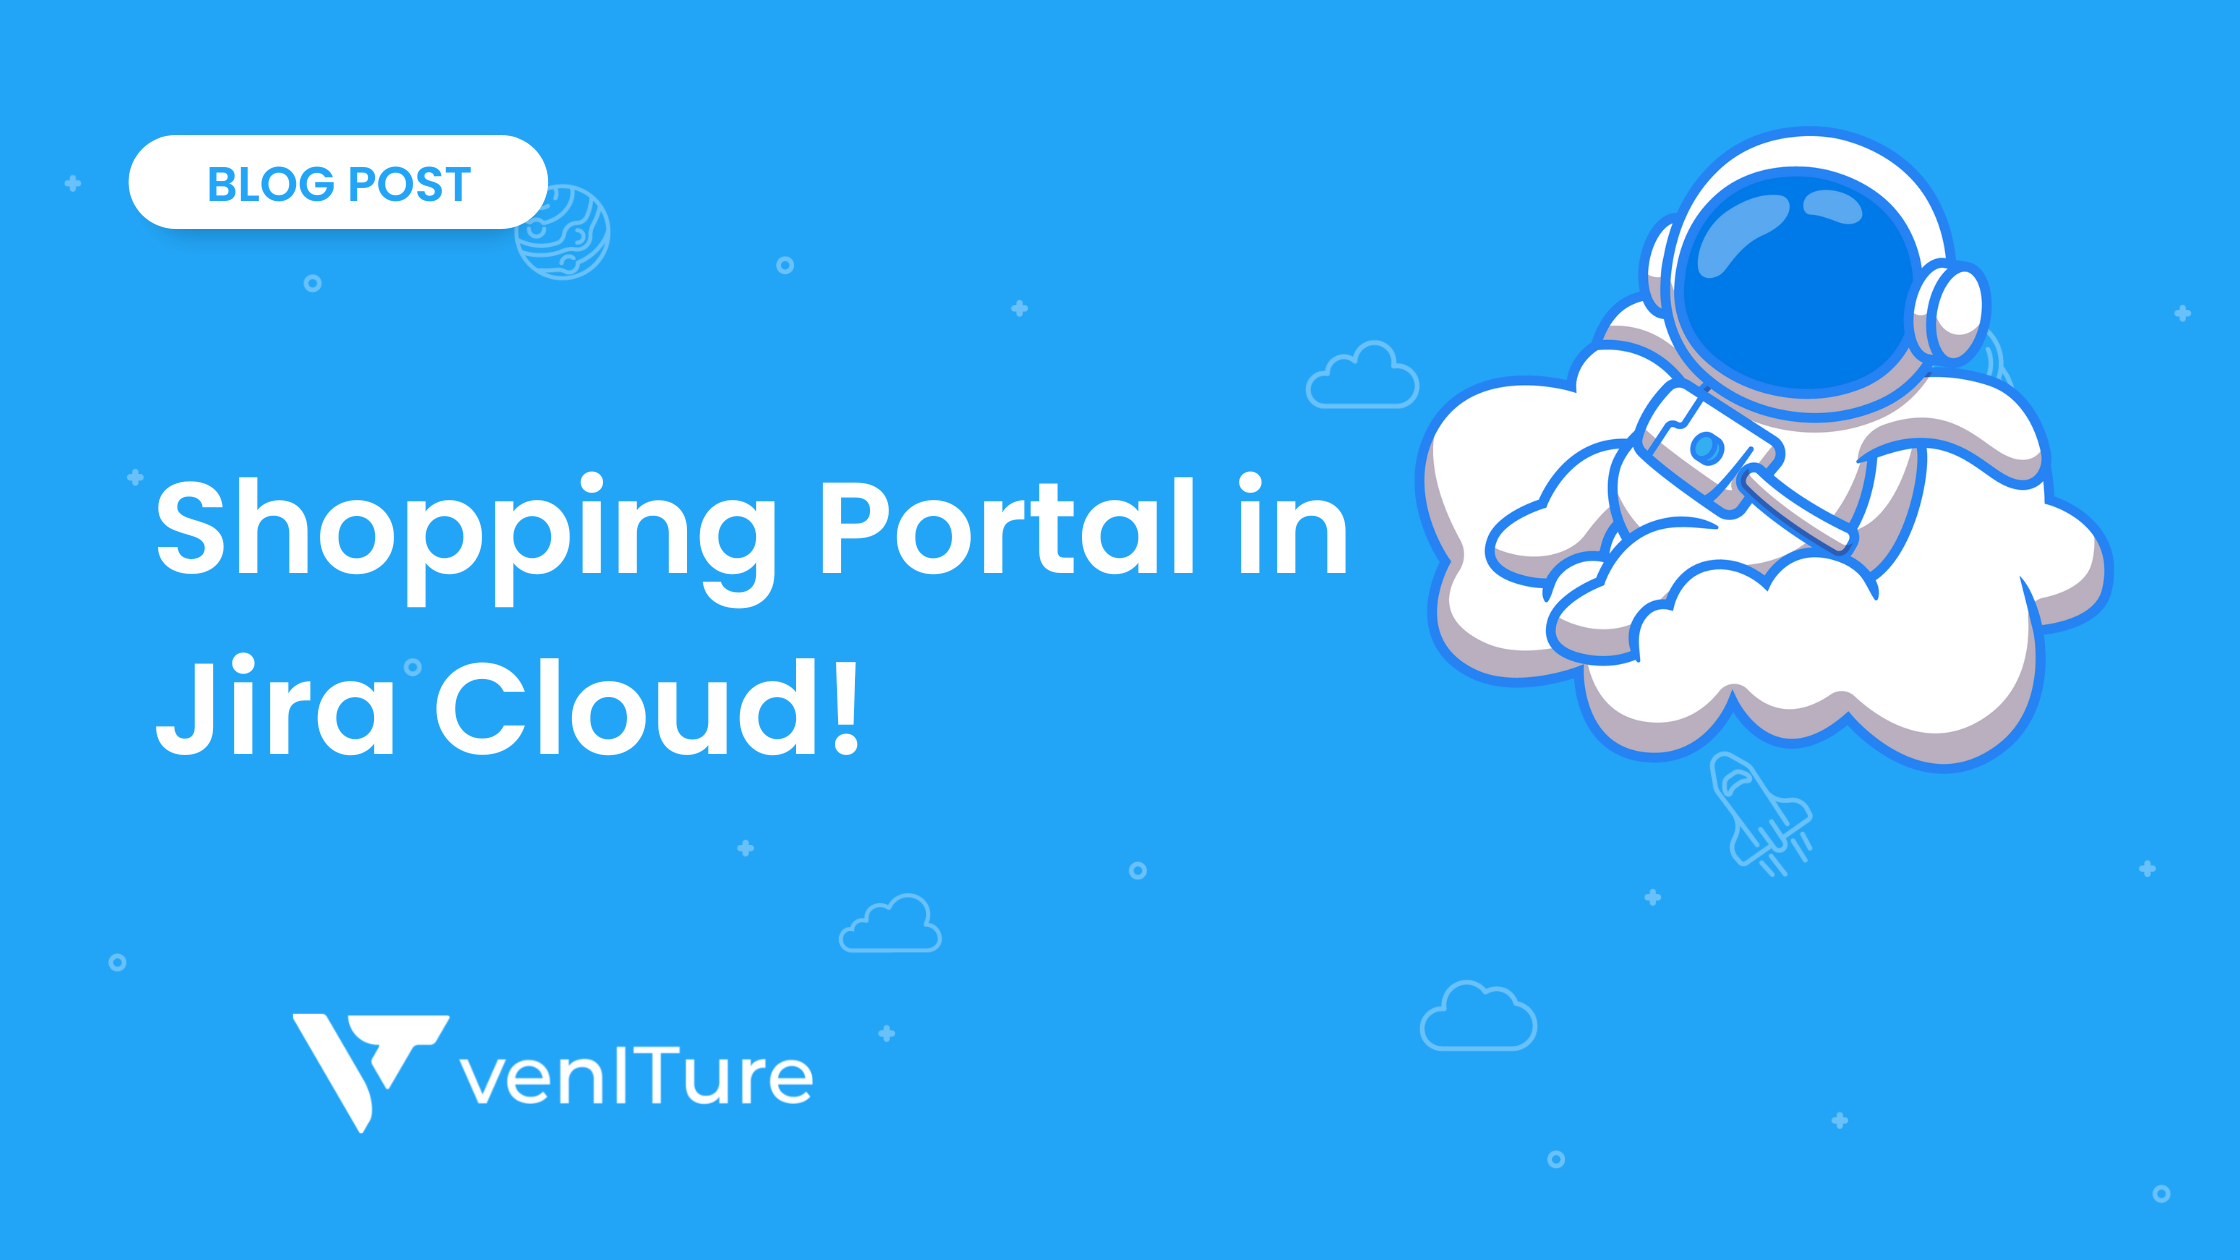 Your Guide to using the Jira Cloud Shopping Portal!